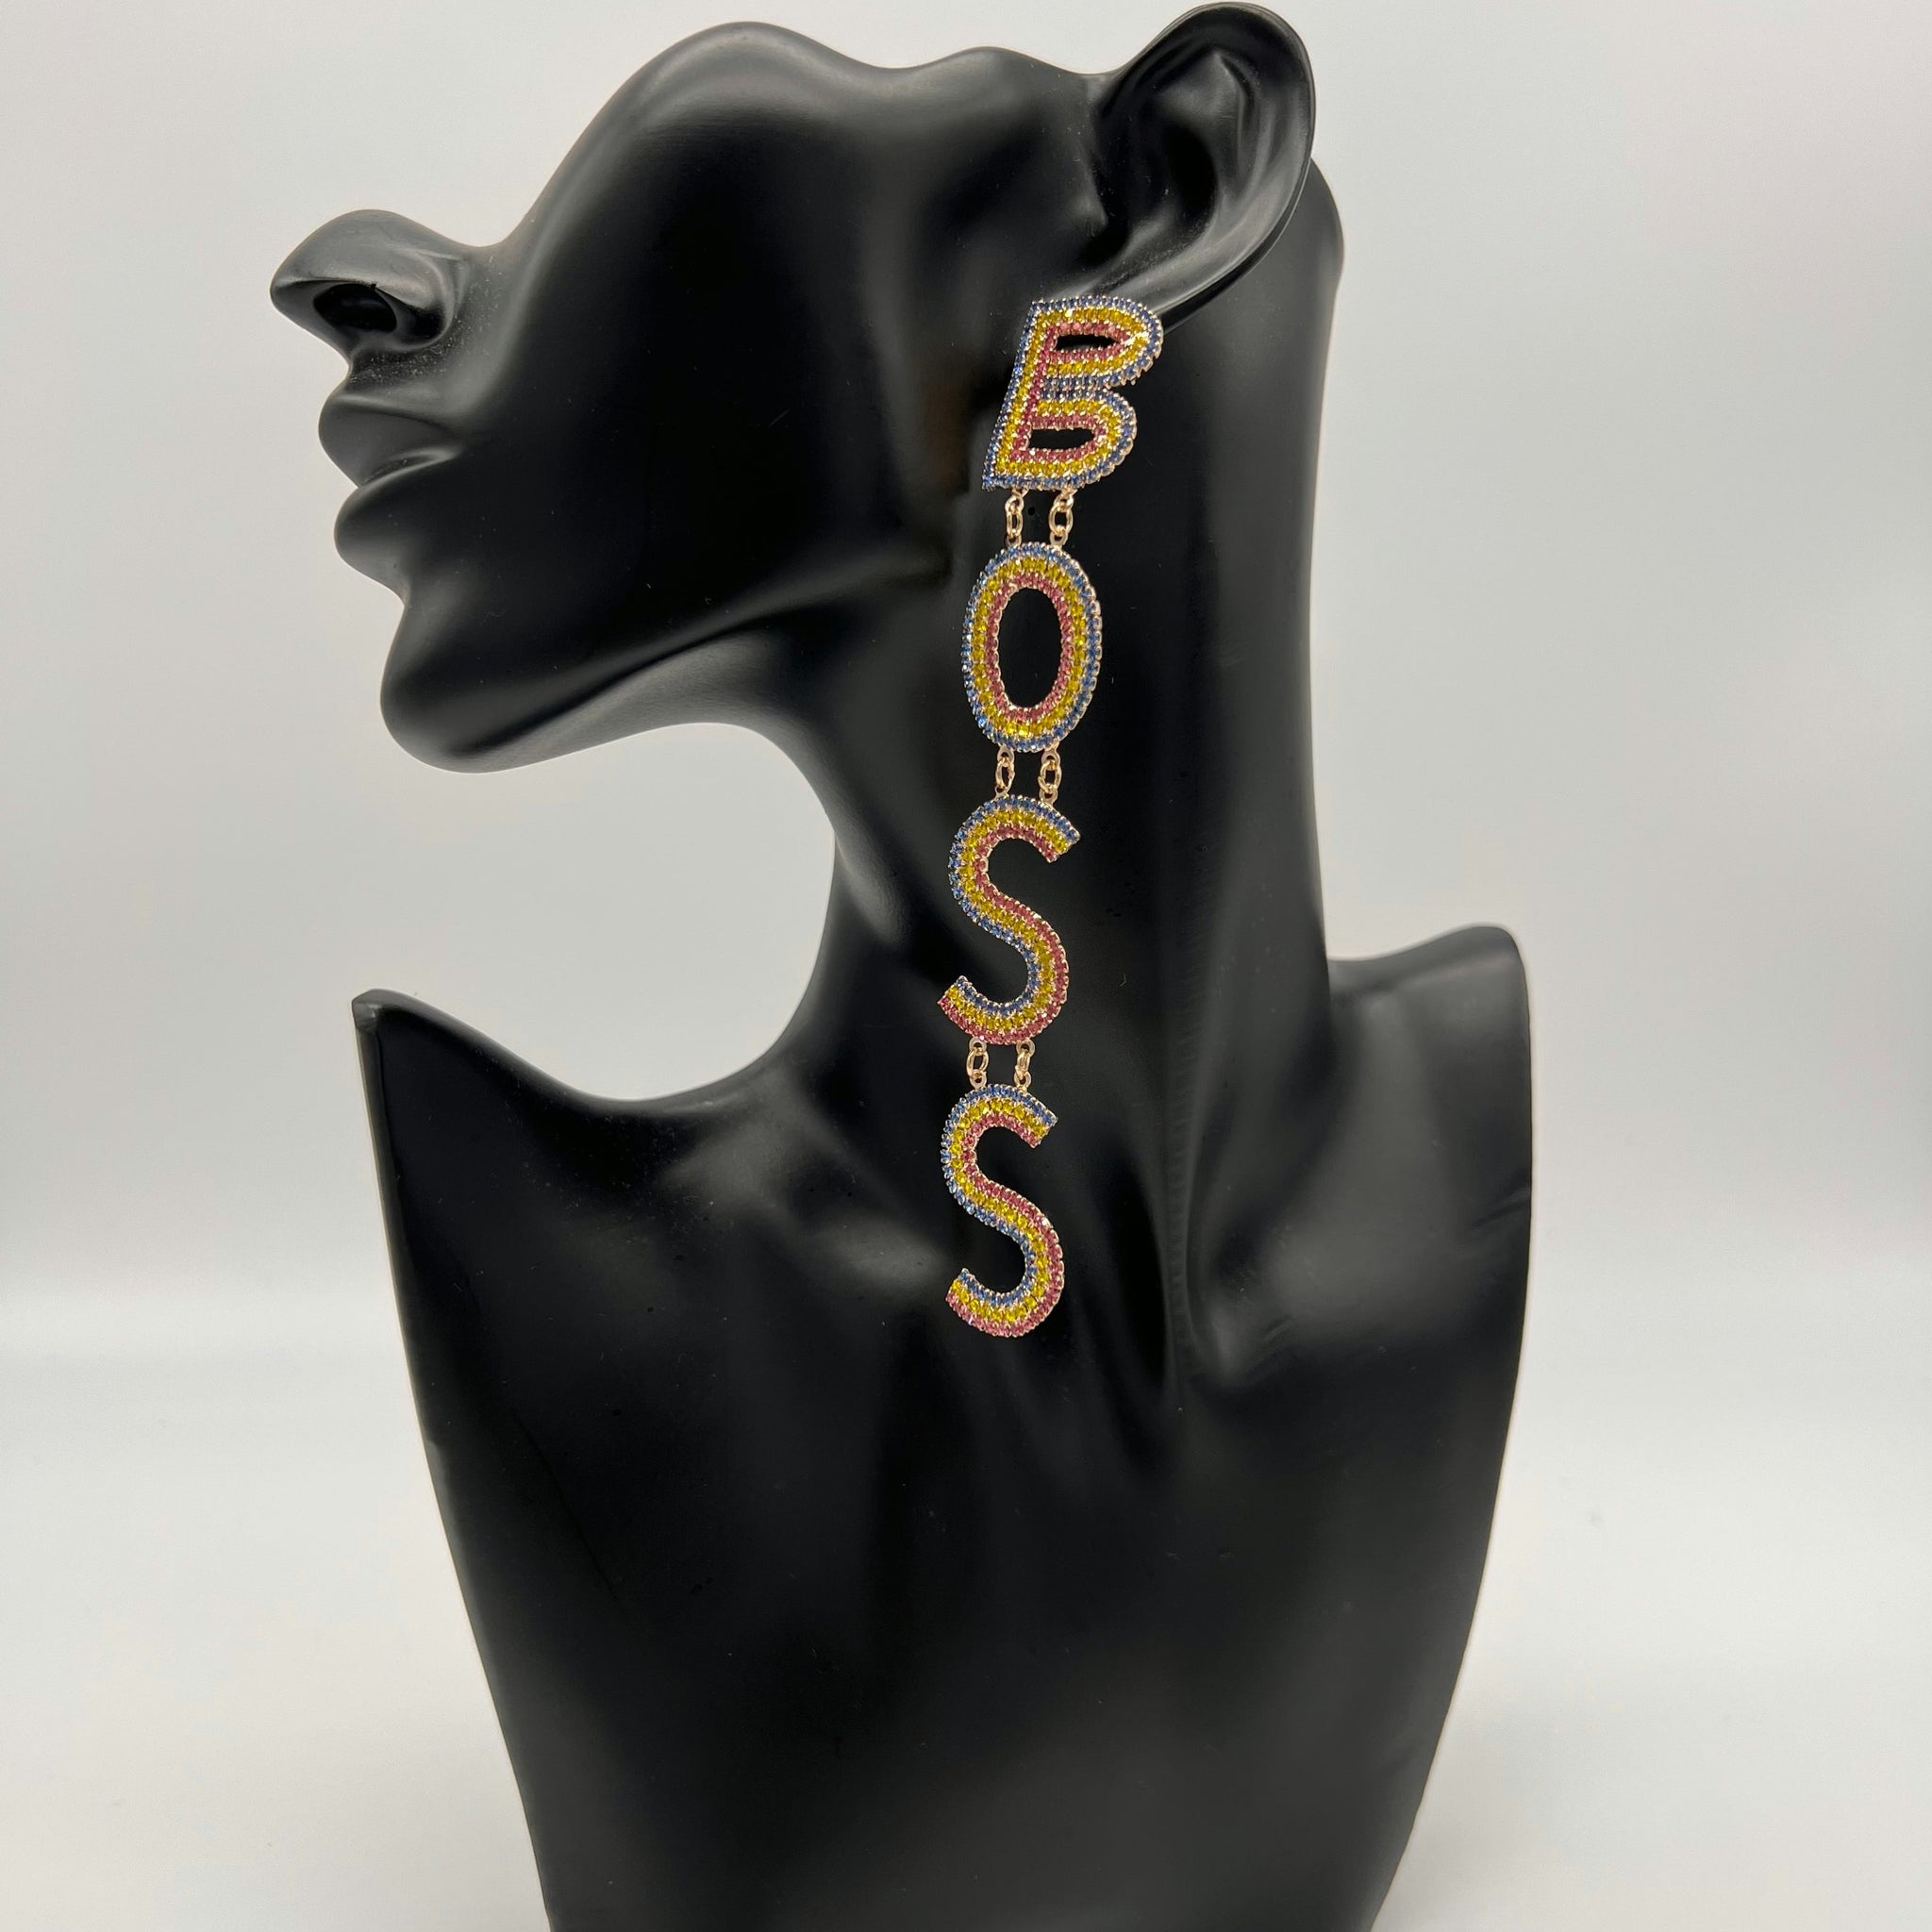 'Boss babe' earrings